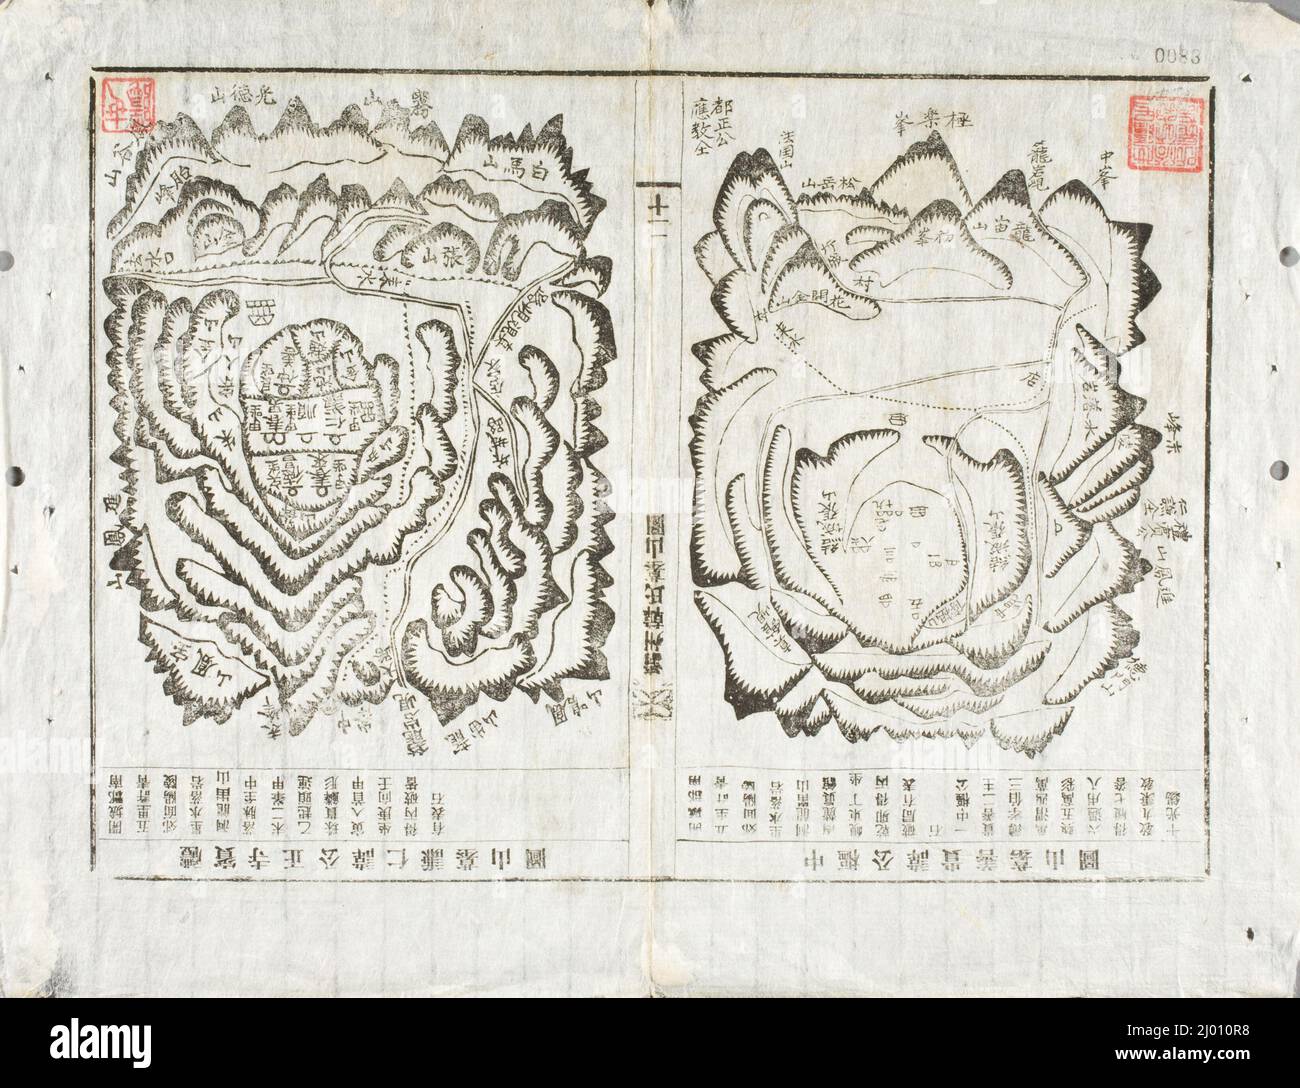 Mappa dei siti di sepoltura ancestrale della Famiglia Han di Chonju. Corea, Corea, dinastia Joseon (1392-1910), 18th secolo. Stampe; tagli di legno. Stampa a blocchi di legno, inchiostro su seta Foto Stock